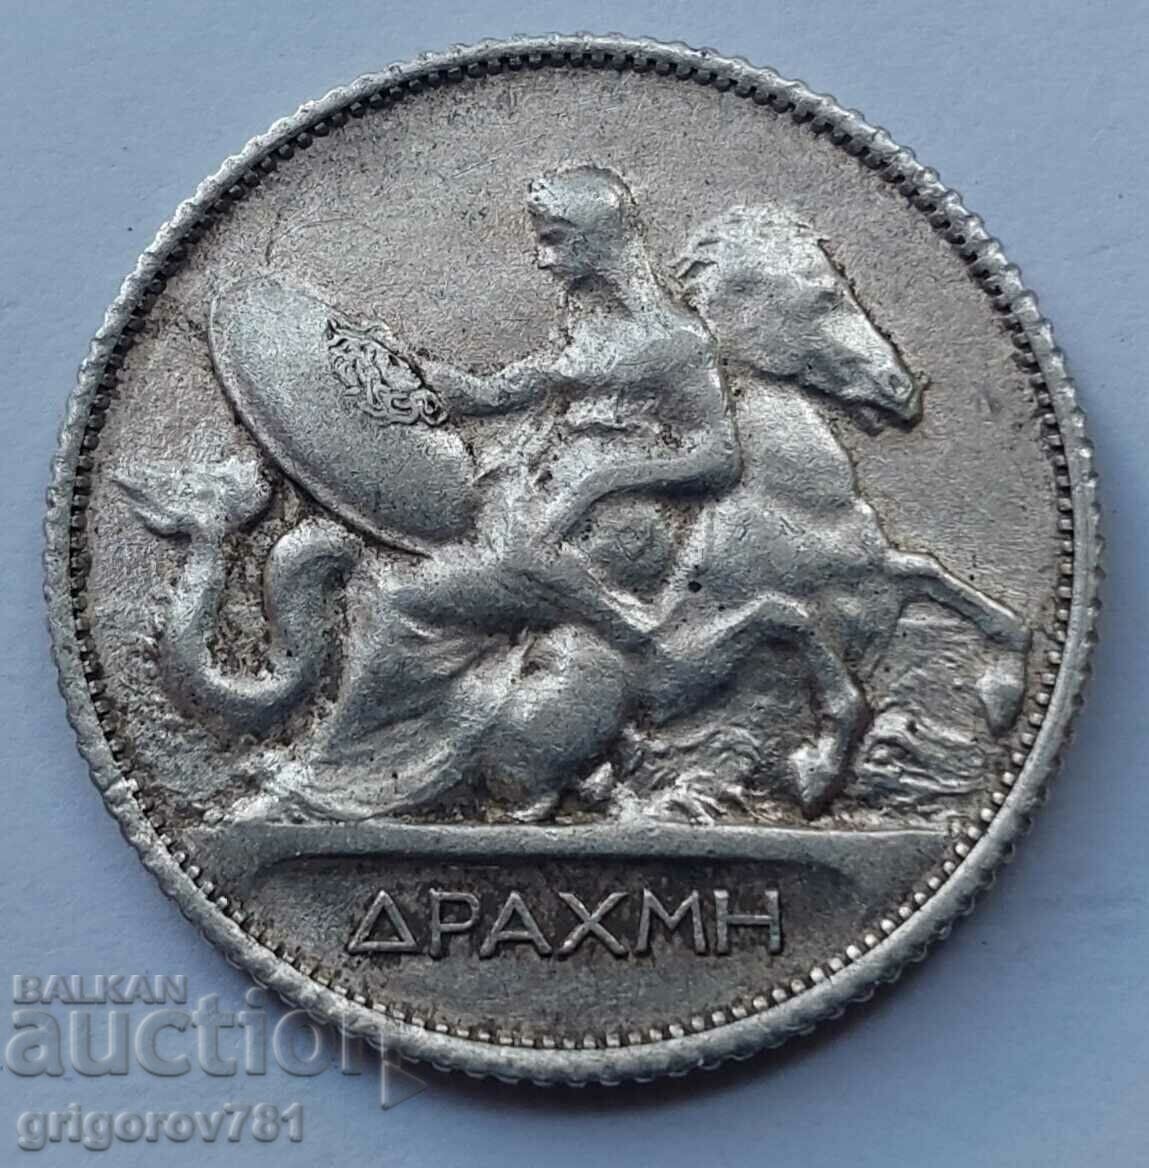 1 Drachma Silver Greece 1910 - Silver Coin #1